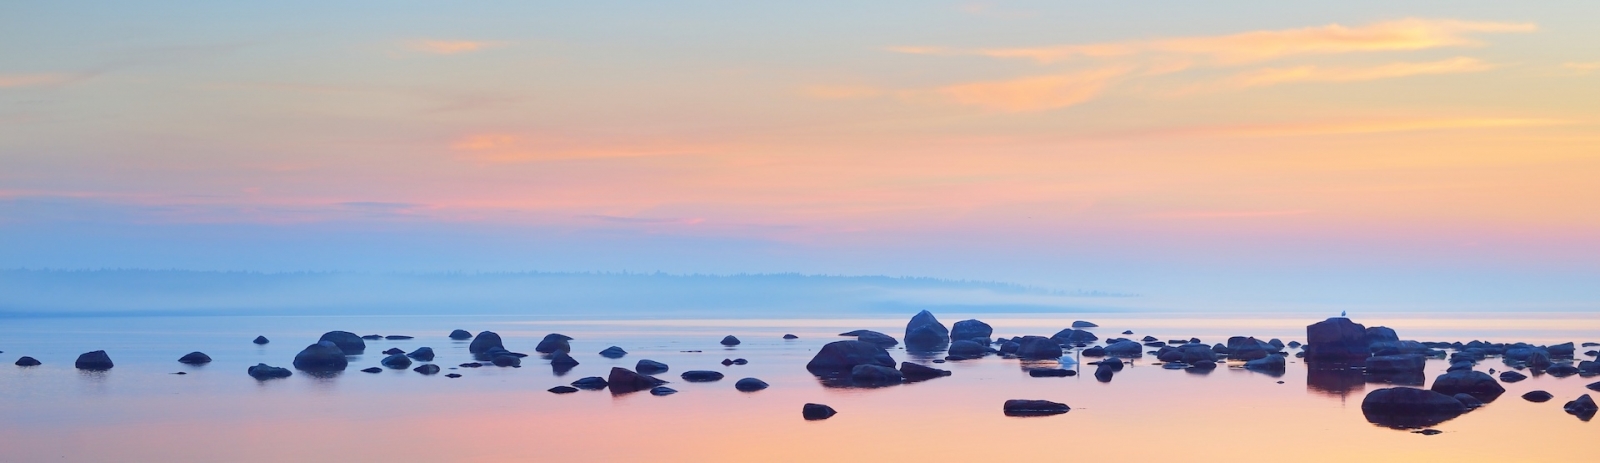 Rochers sur la côte de Kasmu (village du capitaine) au coucher du soleil.  Estonie, mer Baltique.  Ciel bleu clair, nuages ​​roses.  Vue panoramique.  Destinations de voyage, vacances, écotourisme